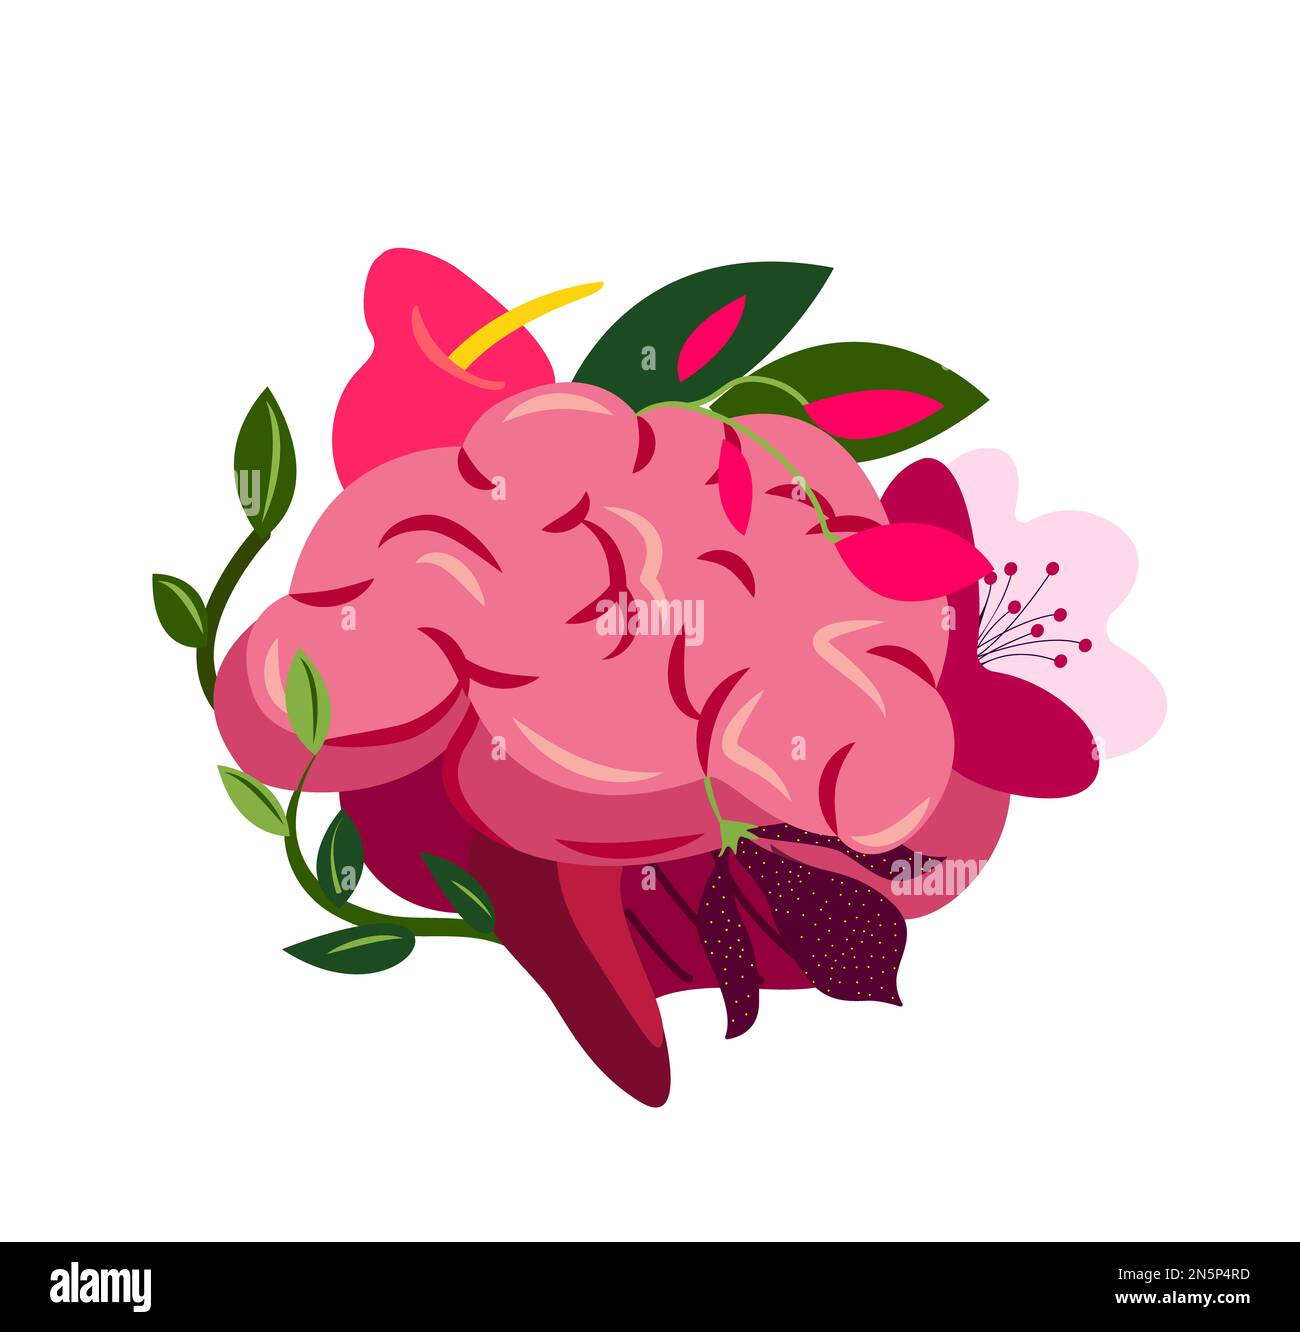 Wunderschön Blühendes Gehirn System, Cerebrum Struktur.Blume Anatomy.Floral Internal Organ.Neurology Organ.Cerebellum Health.Anatomical Bright Healthy Br Stockfoto